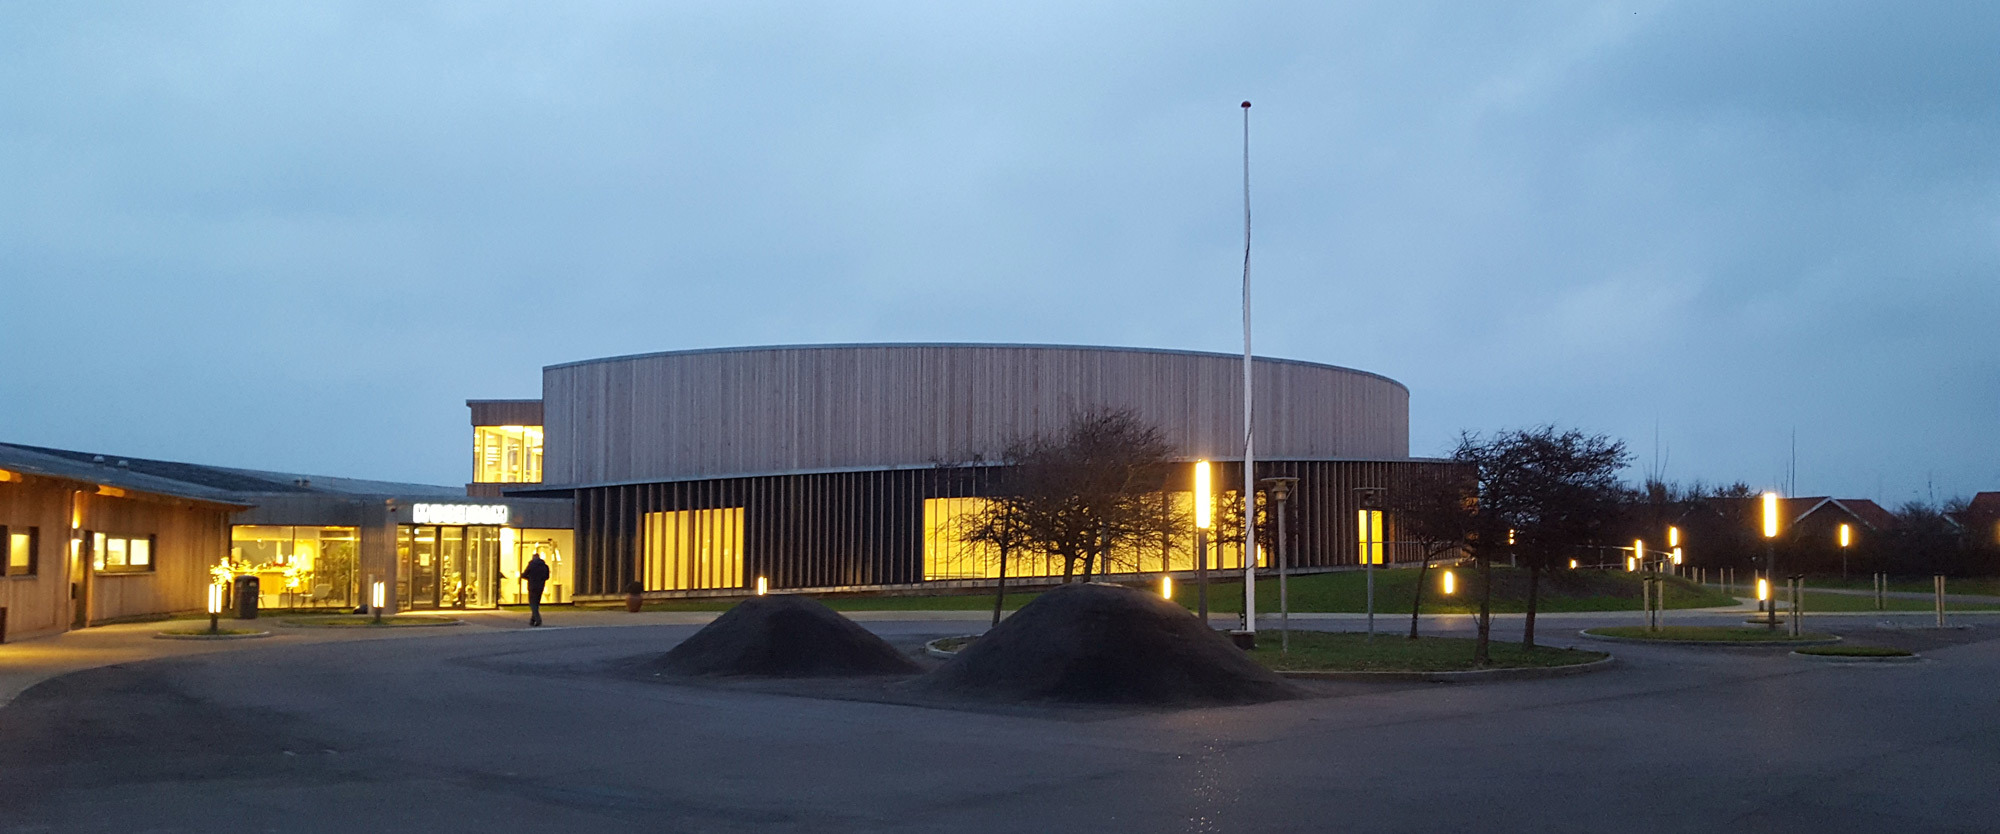 Musholm Bugt Feriecenter